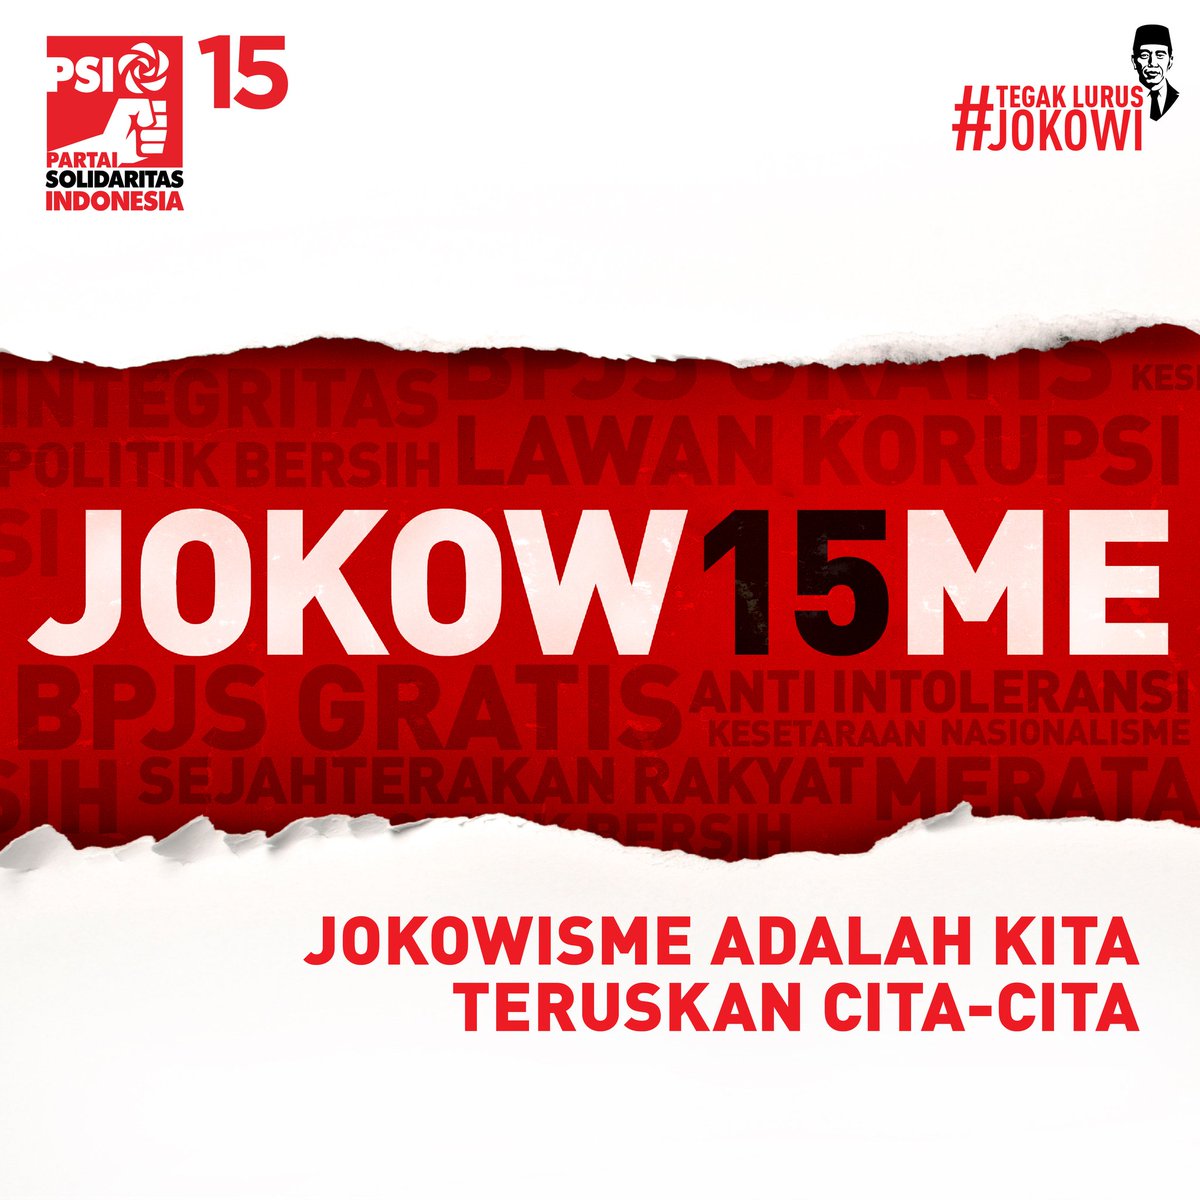 Jokowisme mewakili semangat zaman dan muncul dengan cara yang otentik. Gagasannya adalah bagian dari upaya memastikan cita-cita kemajuan Indonesia bisa terwujud.

#Jokowisme 
#TeruskanJokowisme 
#TegakLurusJokowi 
#PSI
#IndonesiaMaju